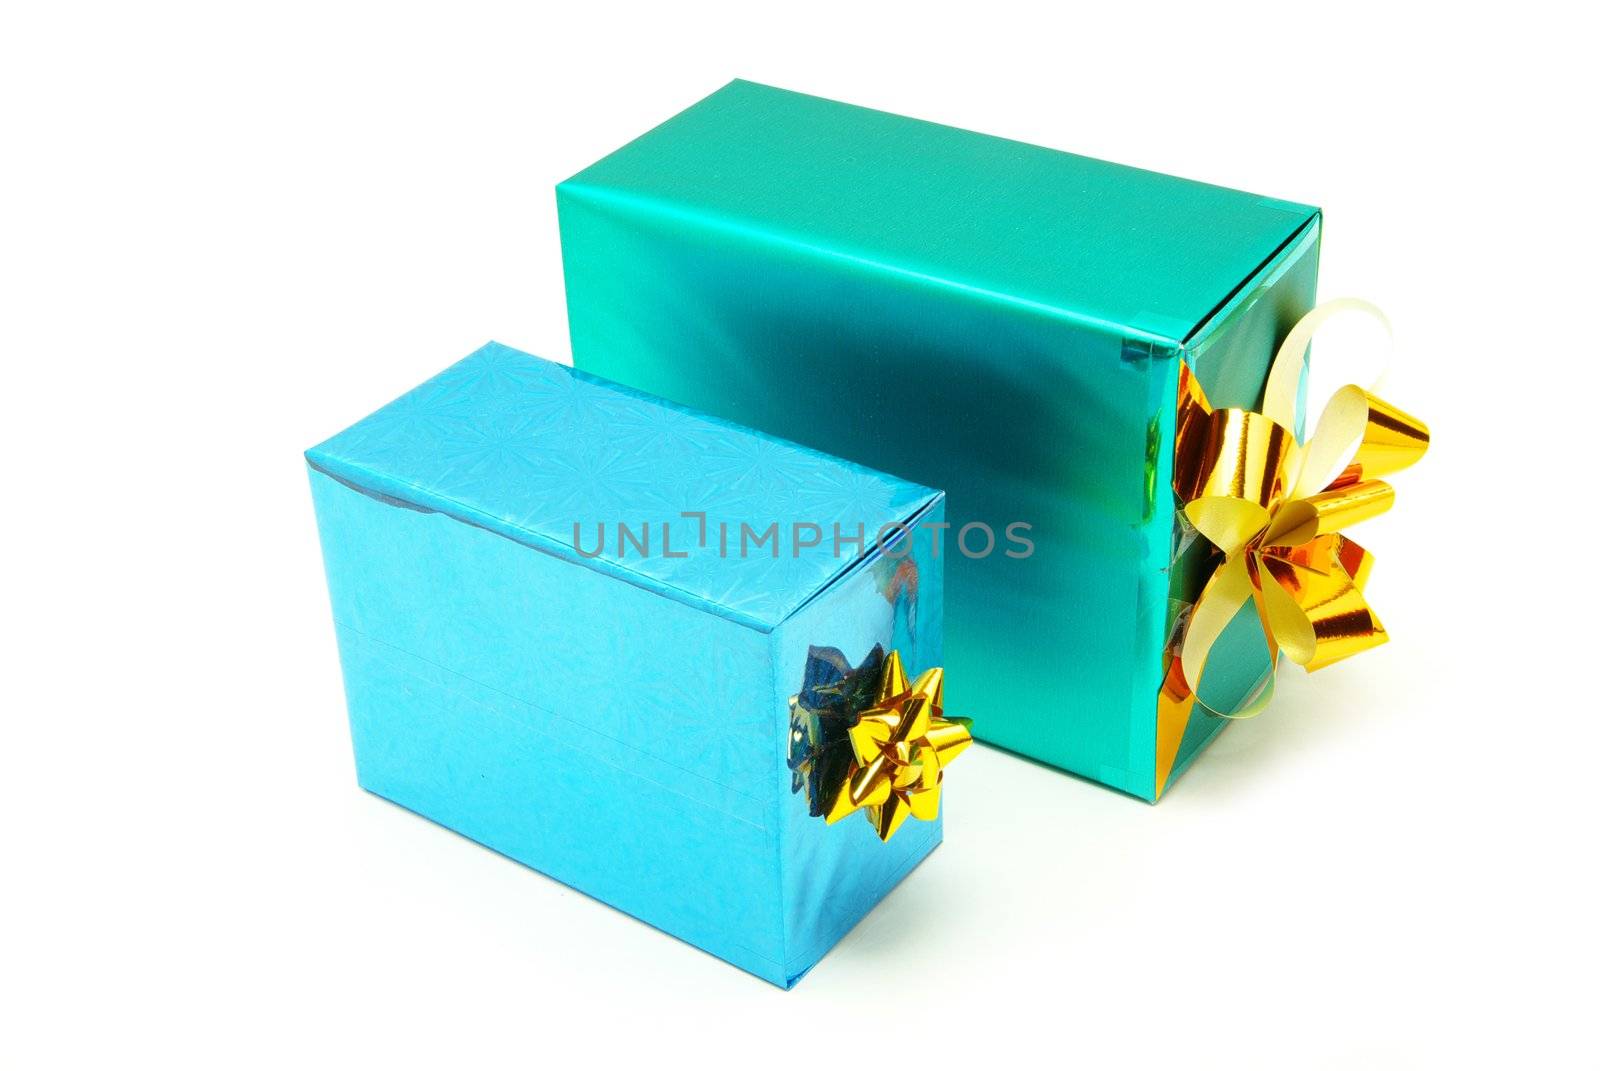  box gifts  by Pakhnyushchyy